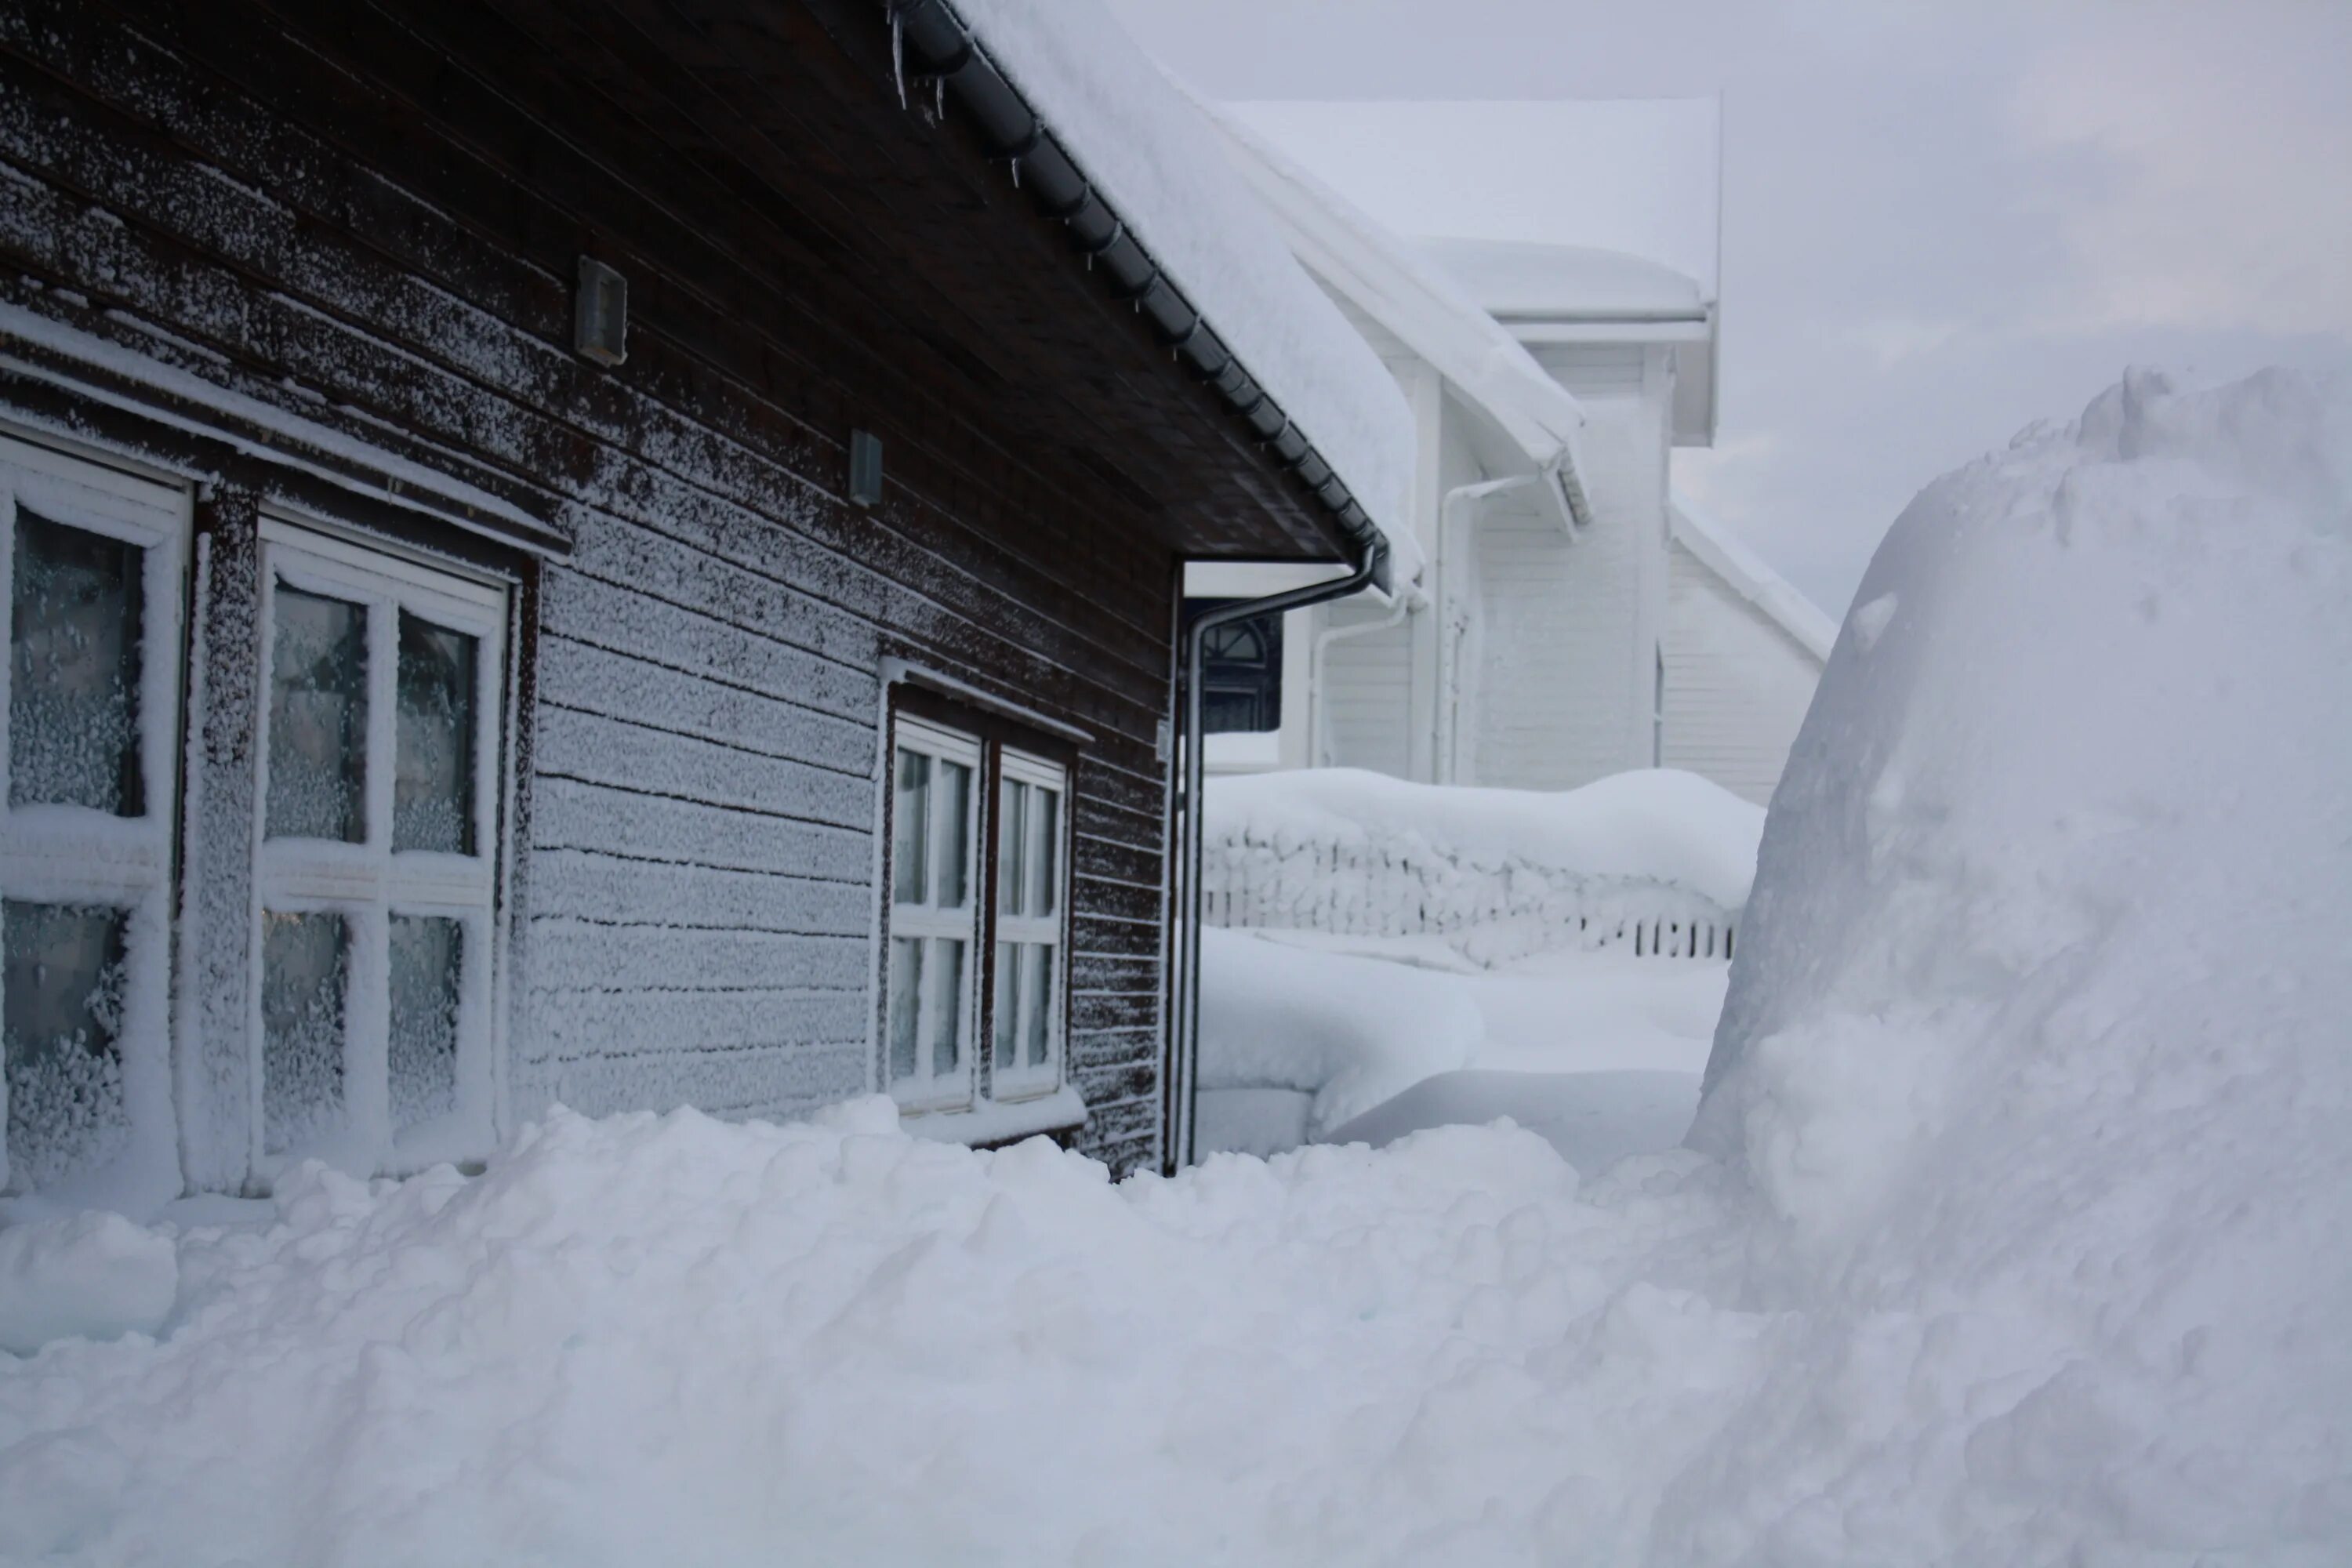 Дом занесло снегом. Сугробы в деревне. Зимние сугробы в деревне. Снегопад в деревне. Квартиры в пурге